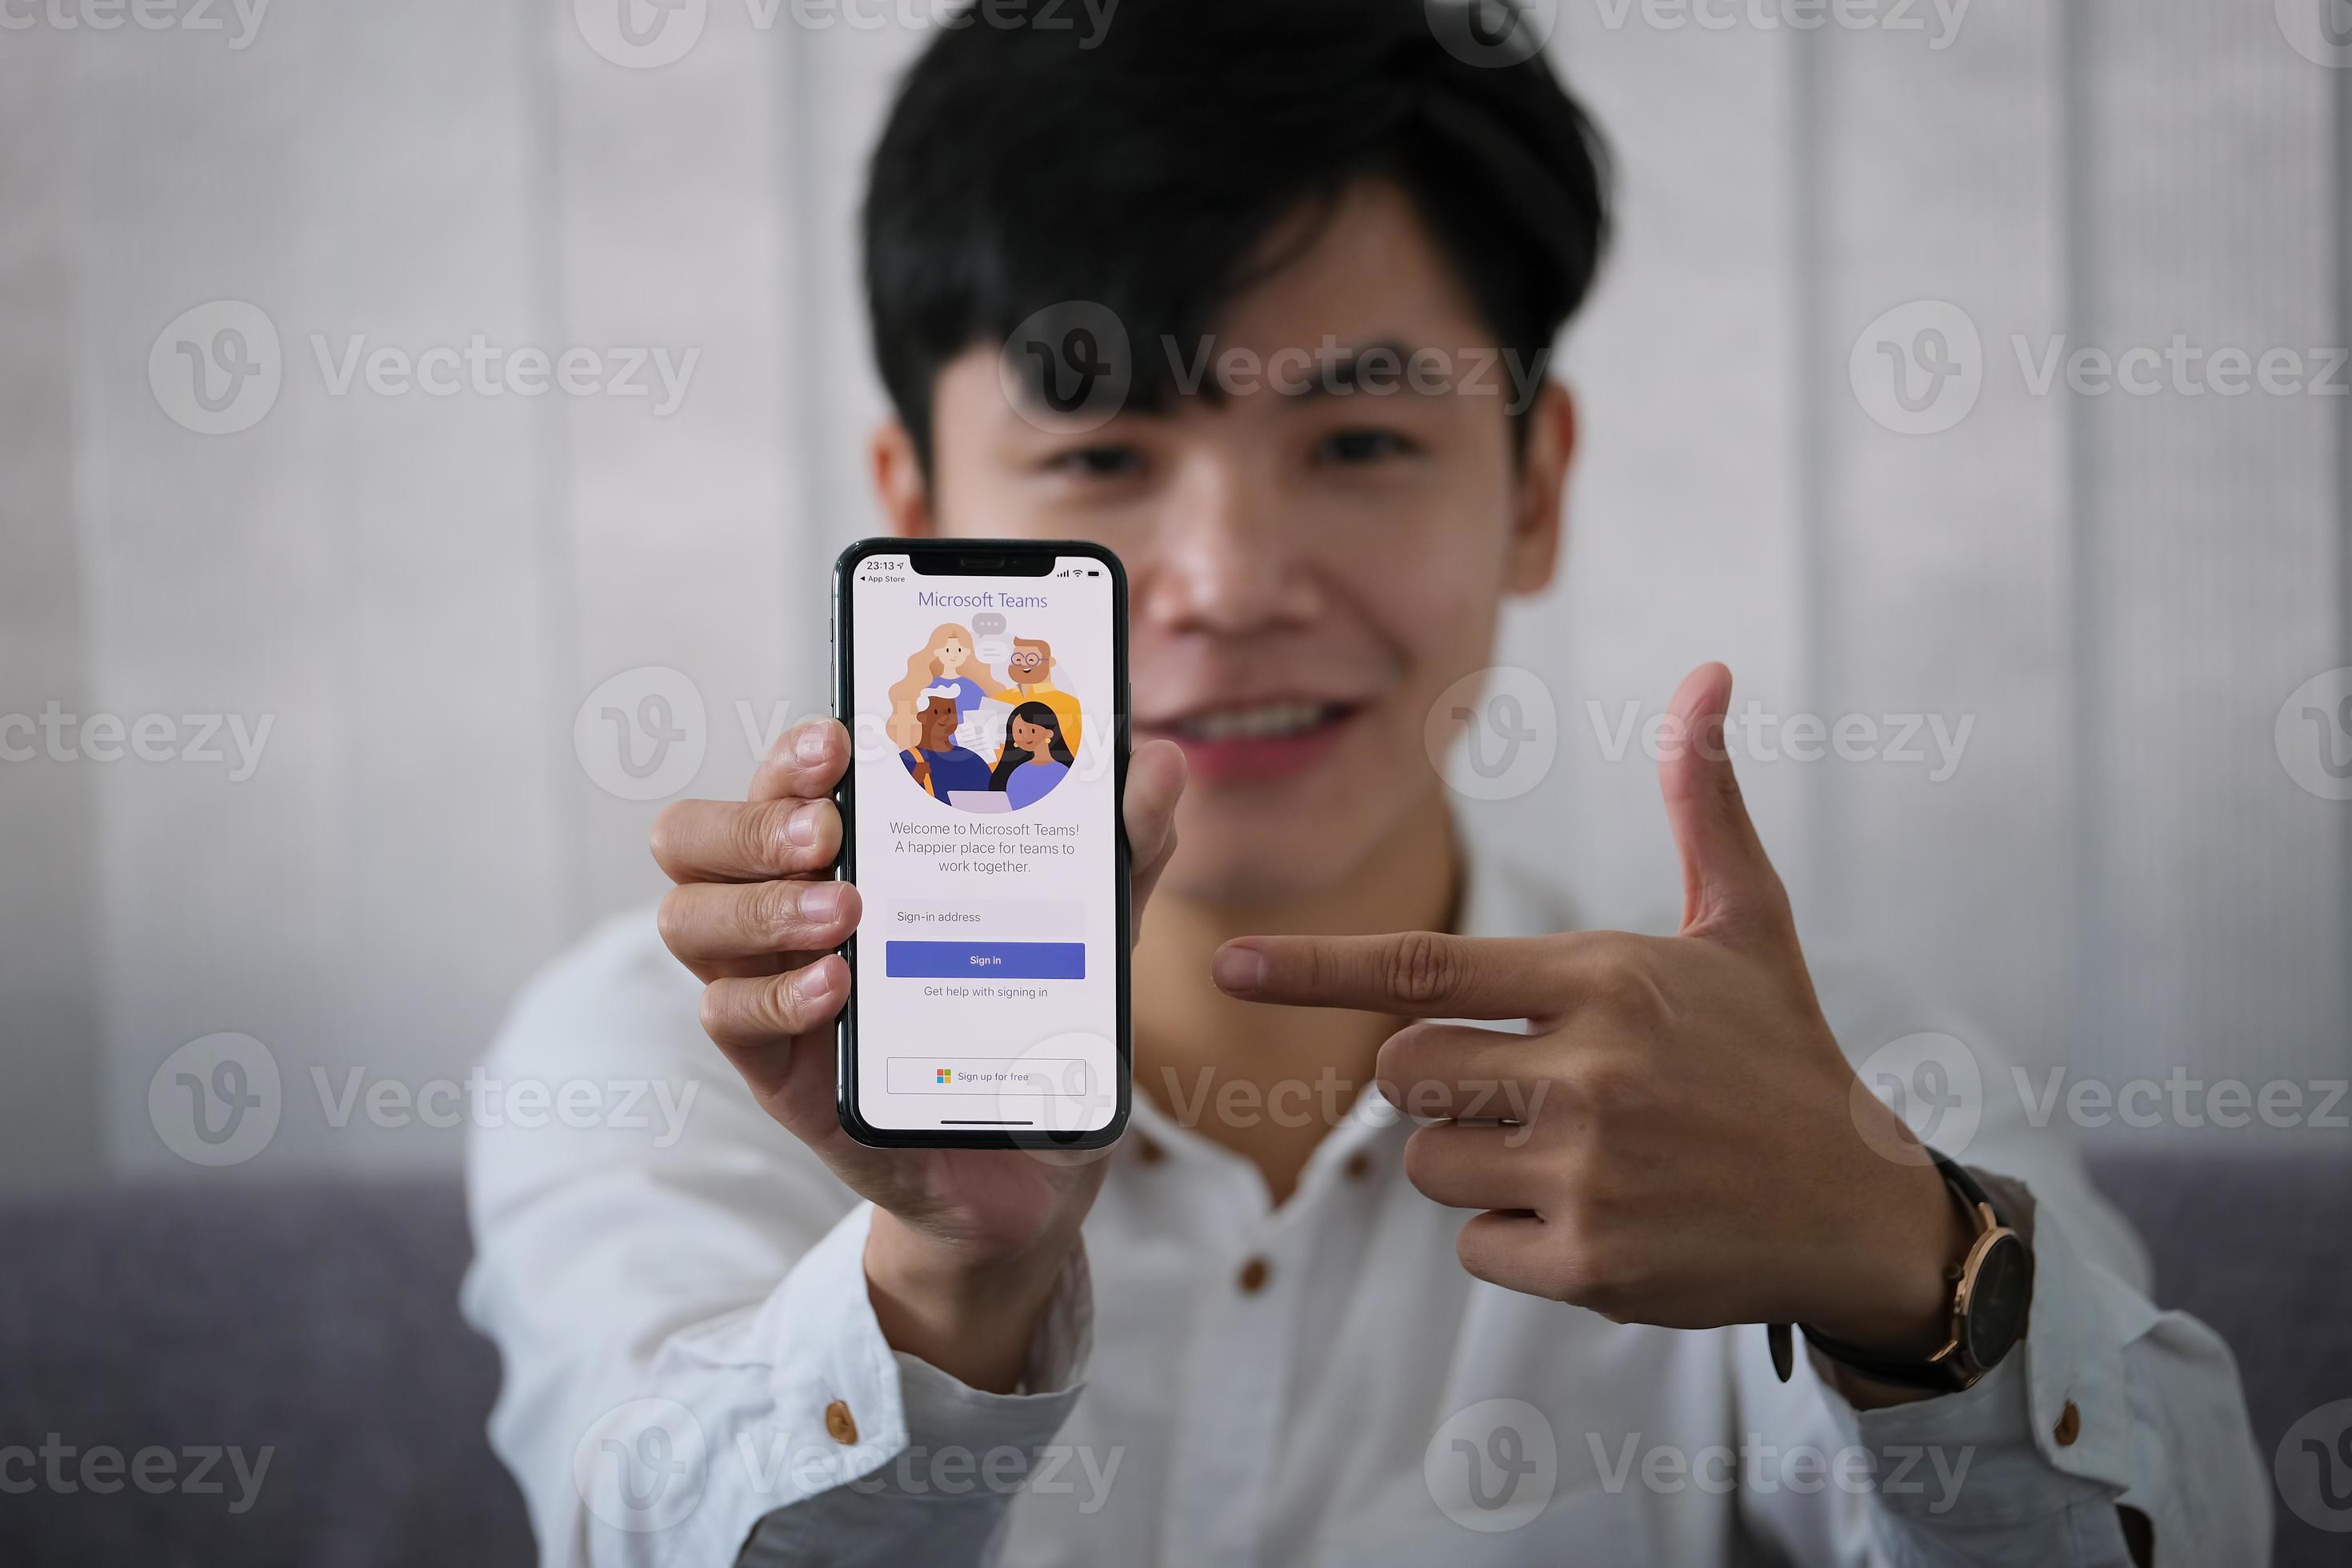 chiang mai, thailandia, 23 gennaio 2021 - uomo che punta a un telefono con i team microsoft su di esso foto